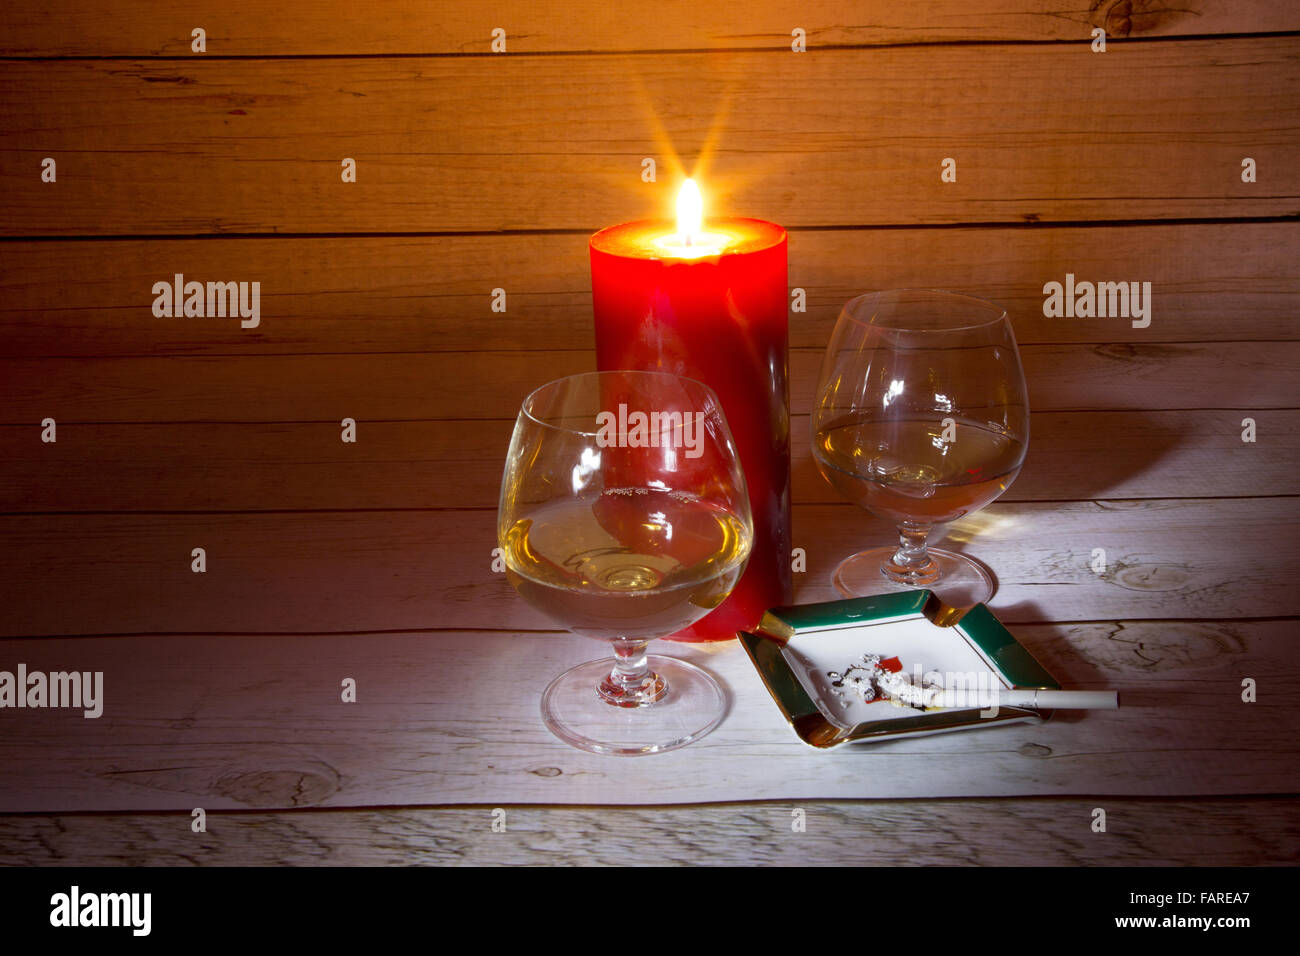 Due bicchieri di cognac, candele accese e la masterizzazione di sigaretta nel portacenere in una luce romantica sullo sfondo di un ta in legno Foto Stock